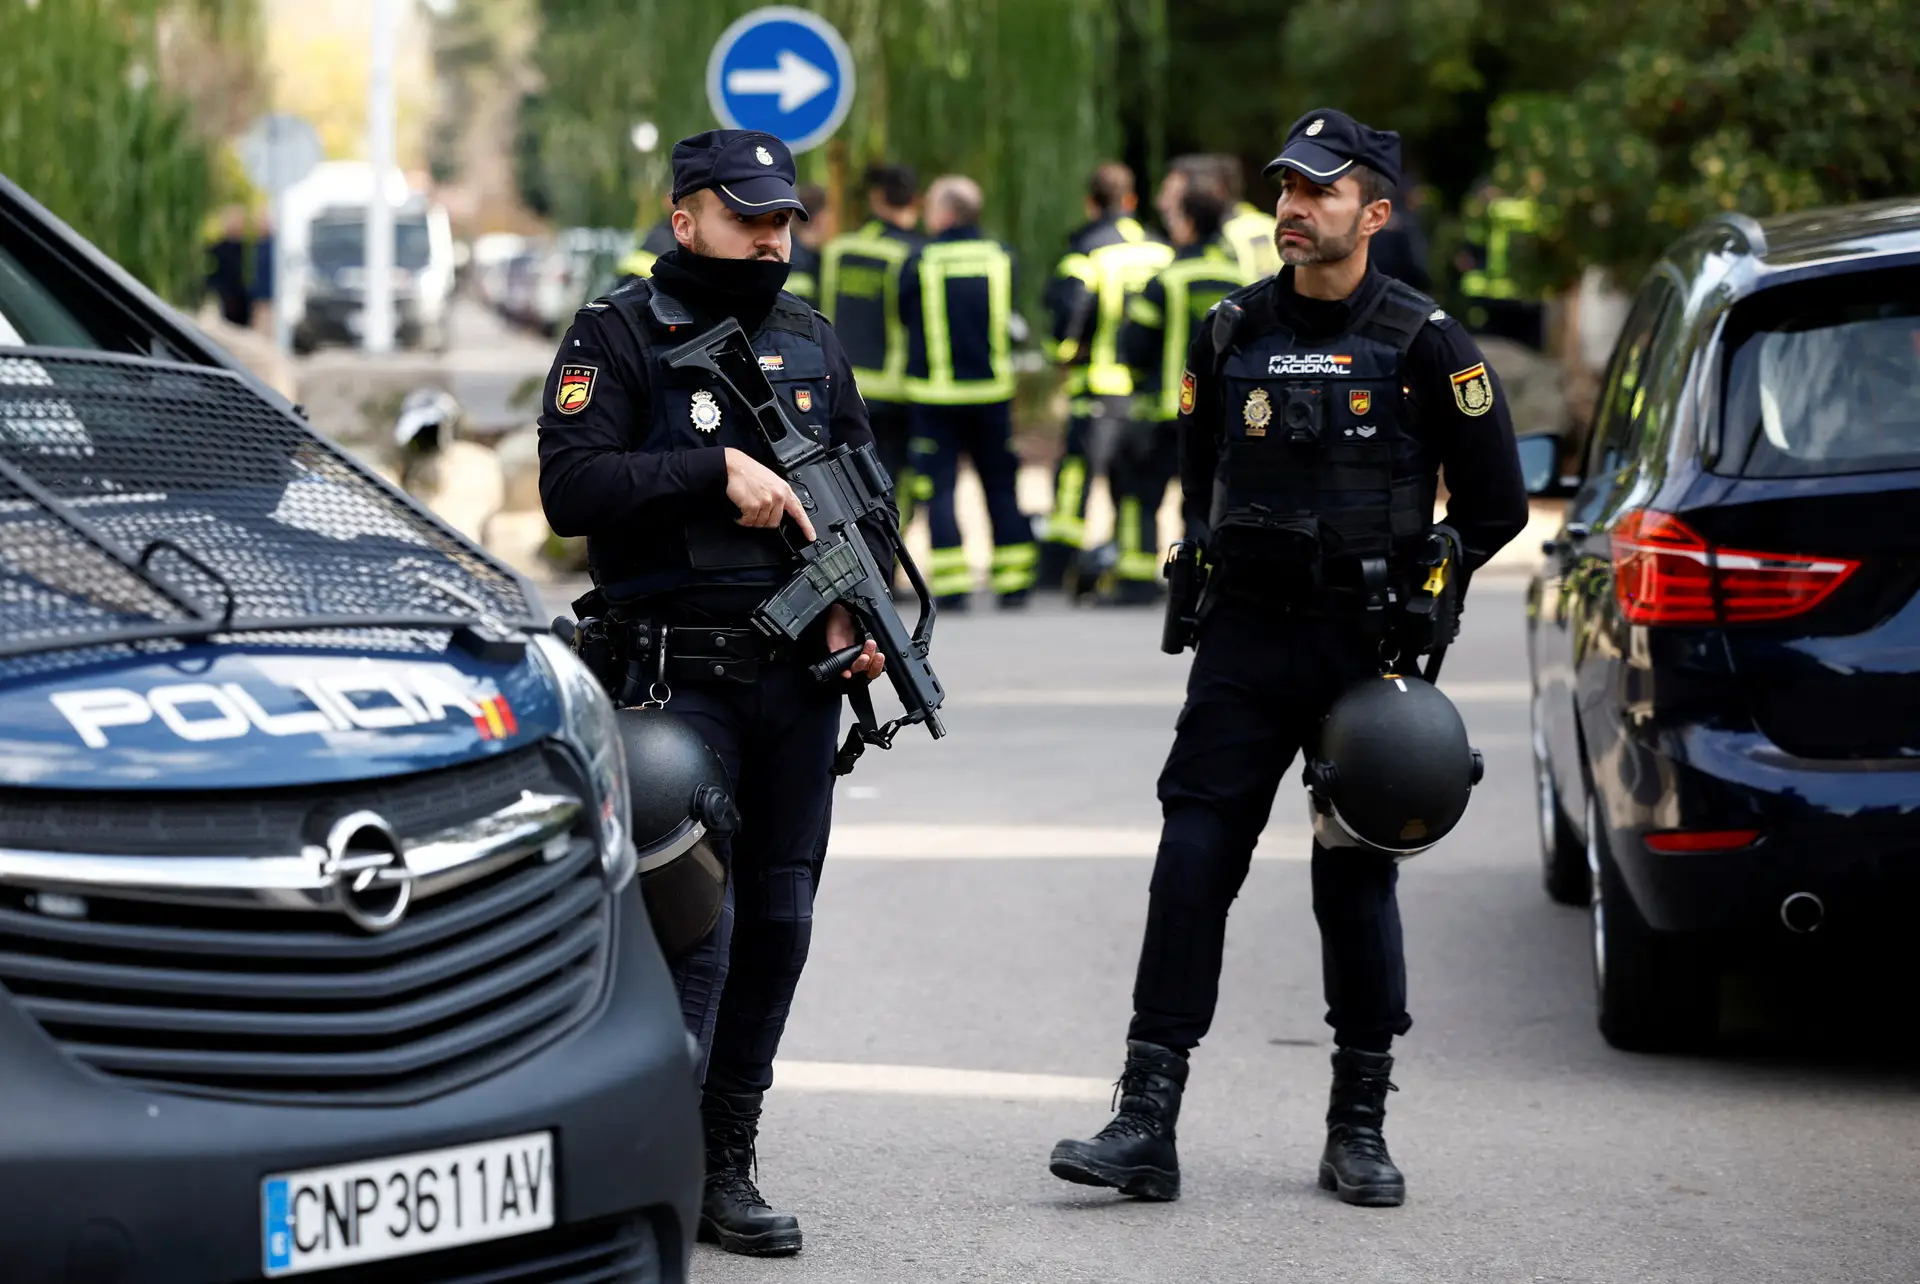 Espanha: já se sabe de onde foram enviados os envelopes armadilhados